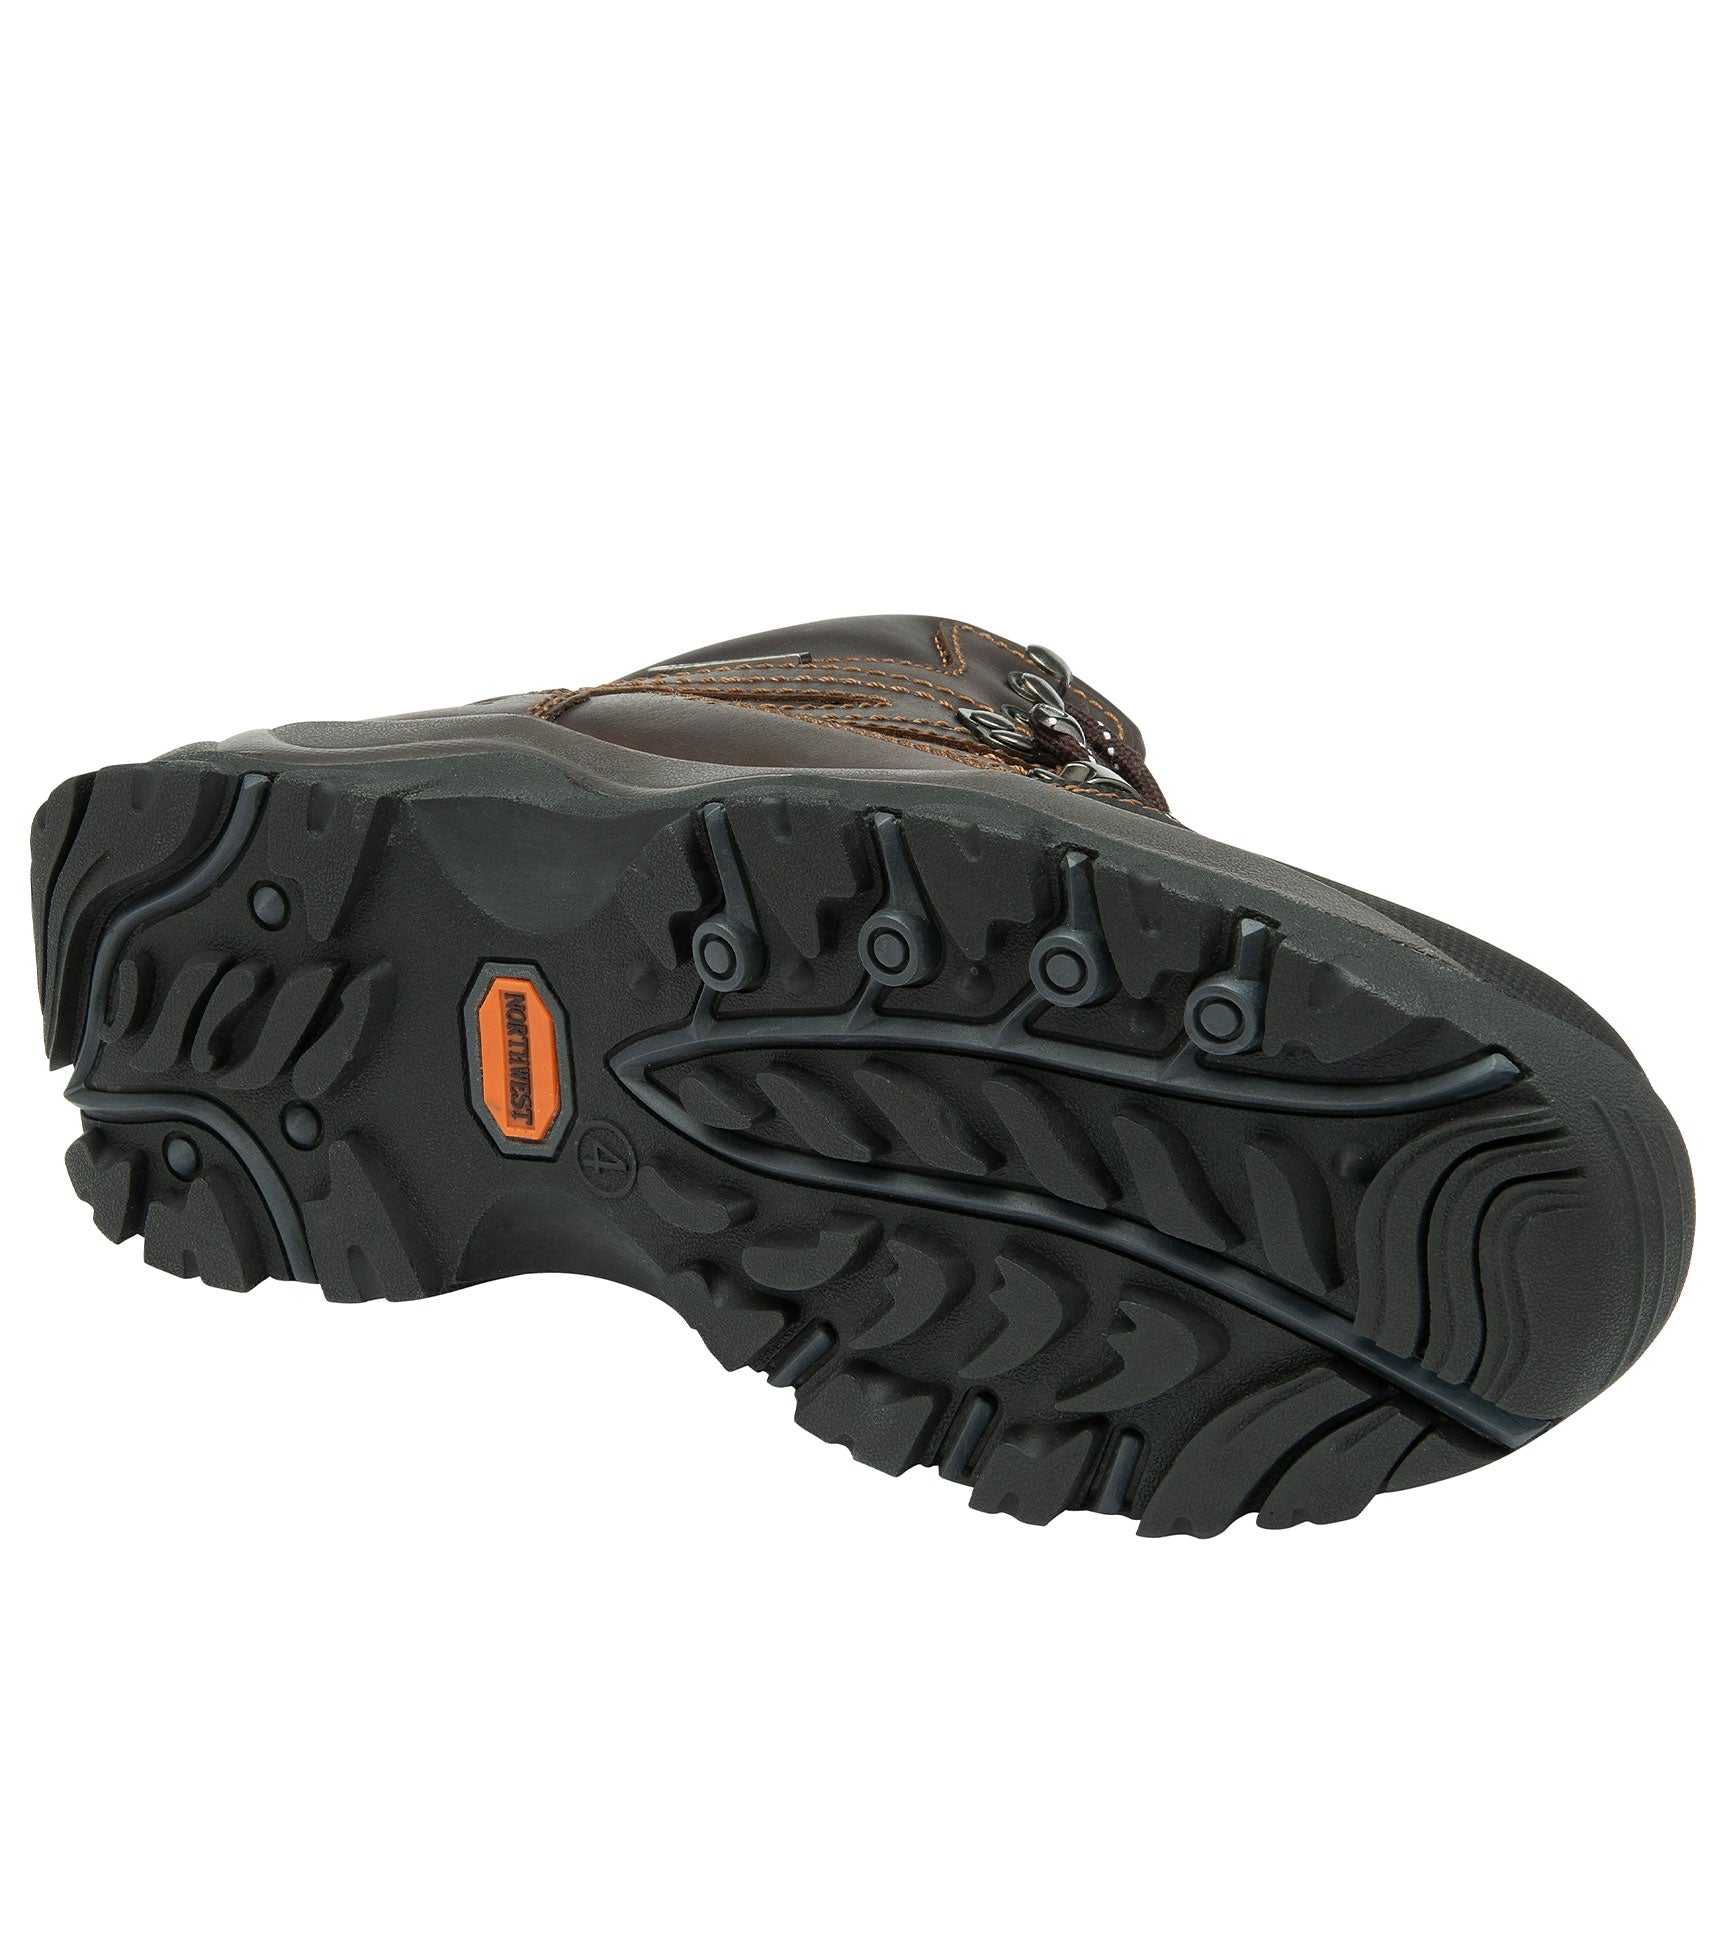 Women's Leather Waterproof Walking Boots - Women's Leather Waterproof Walking Boots